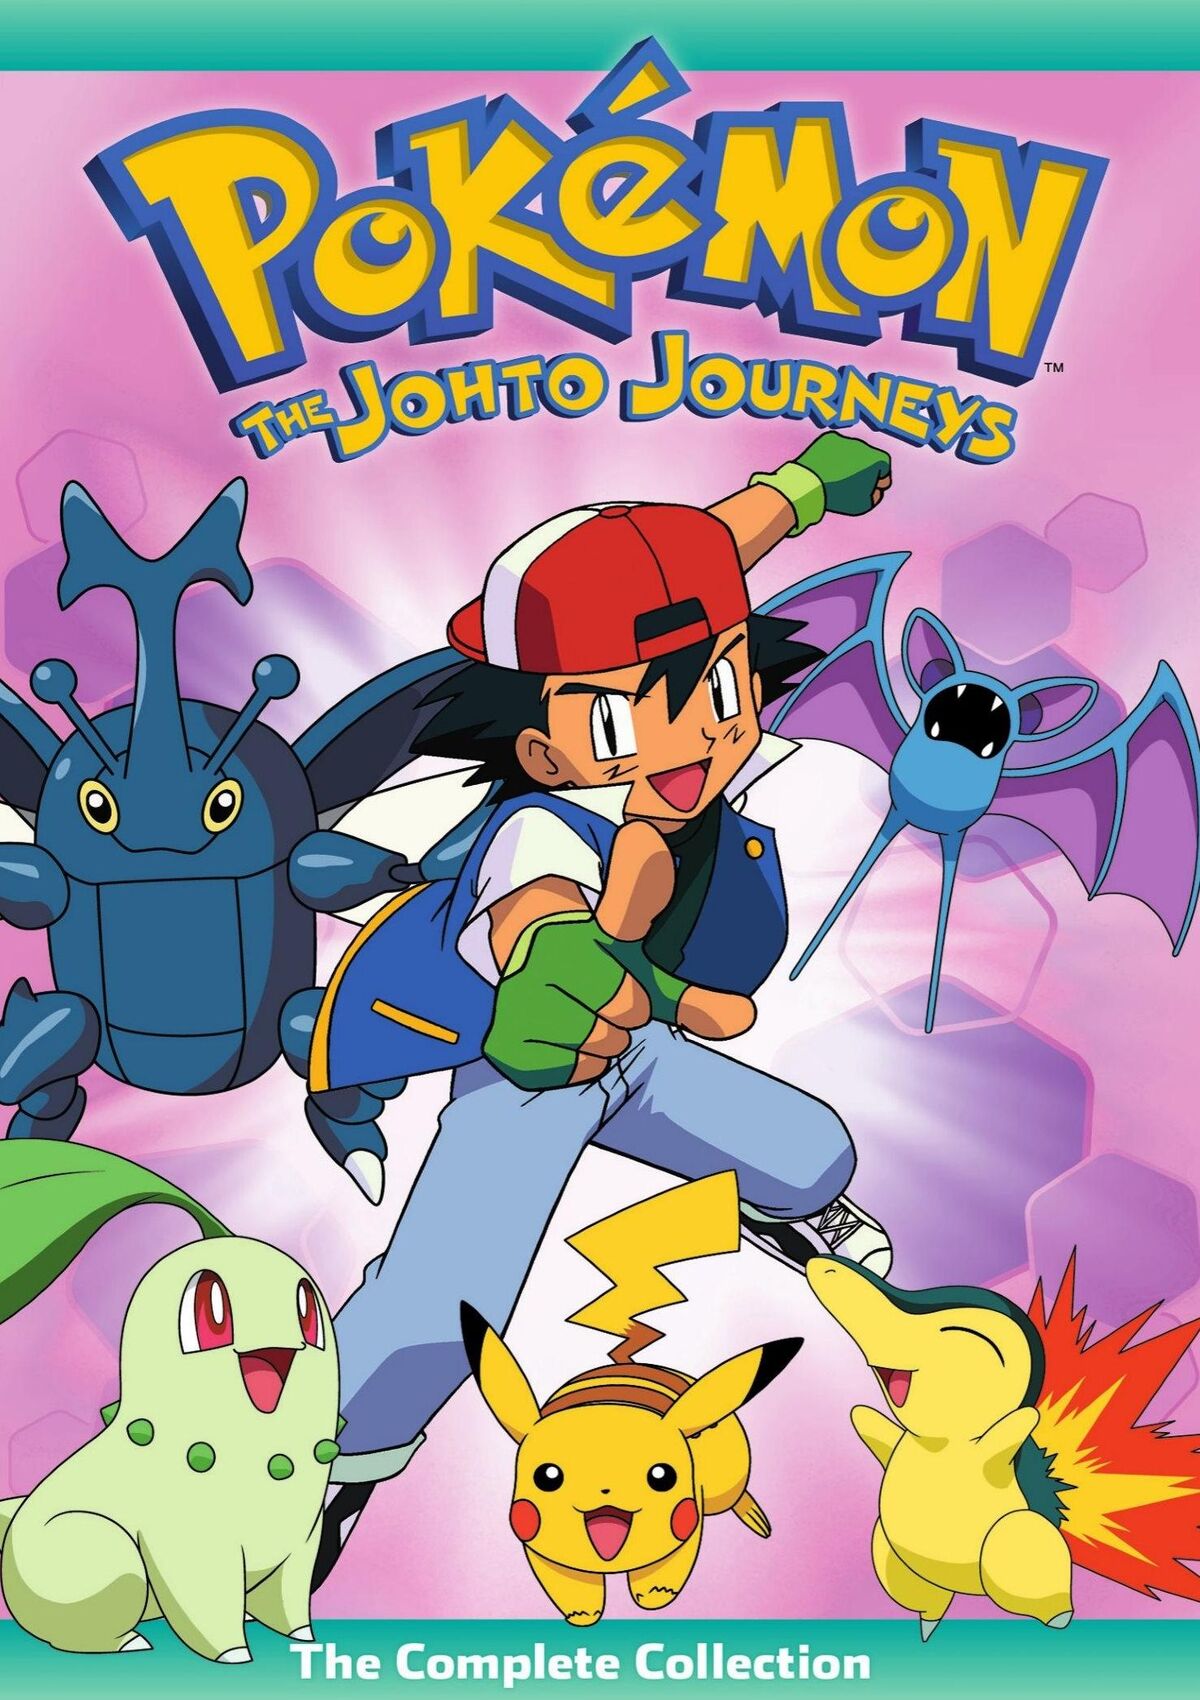 Pokémon (3ª Temporada: A Jornada Johto) - 14 de Outubro de 1999